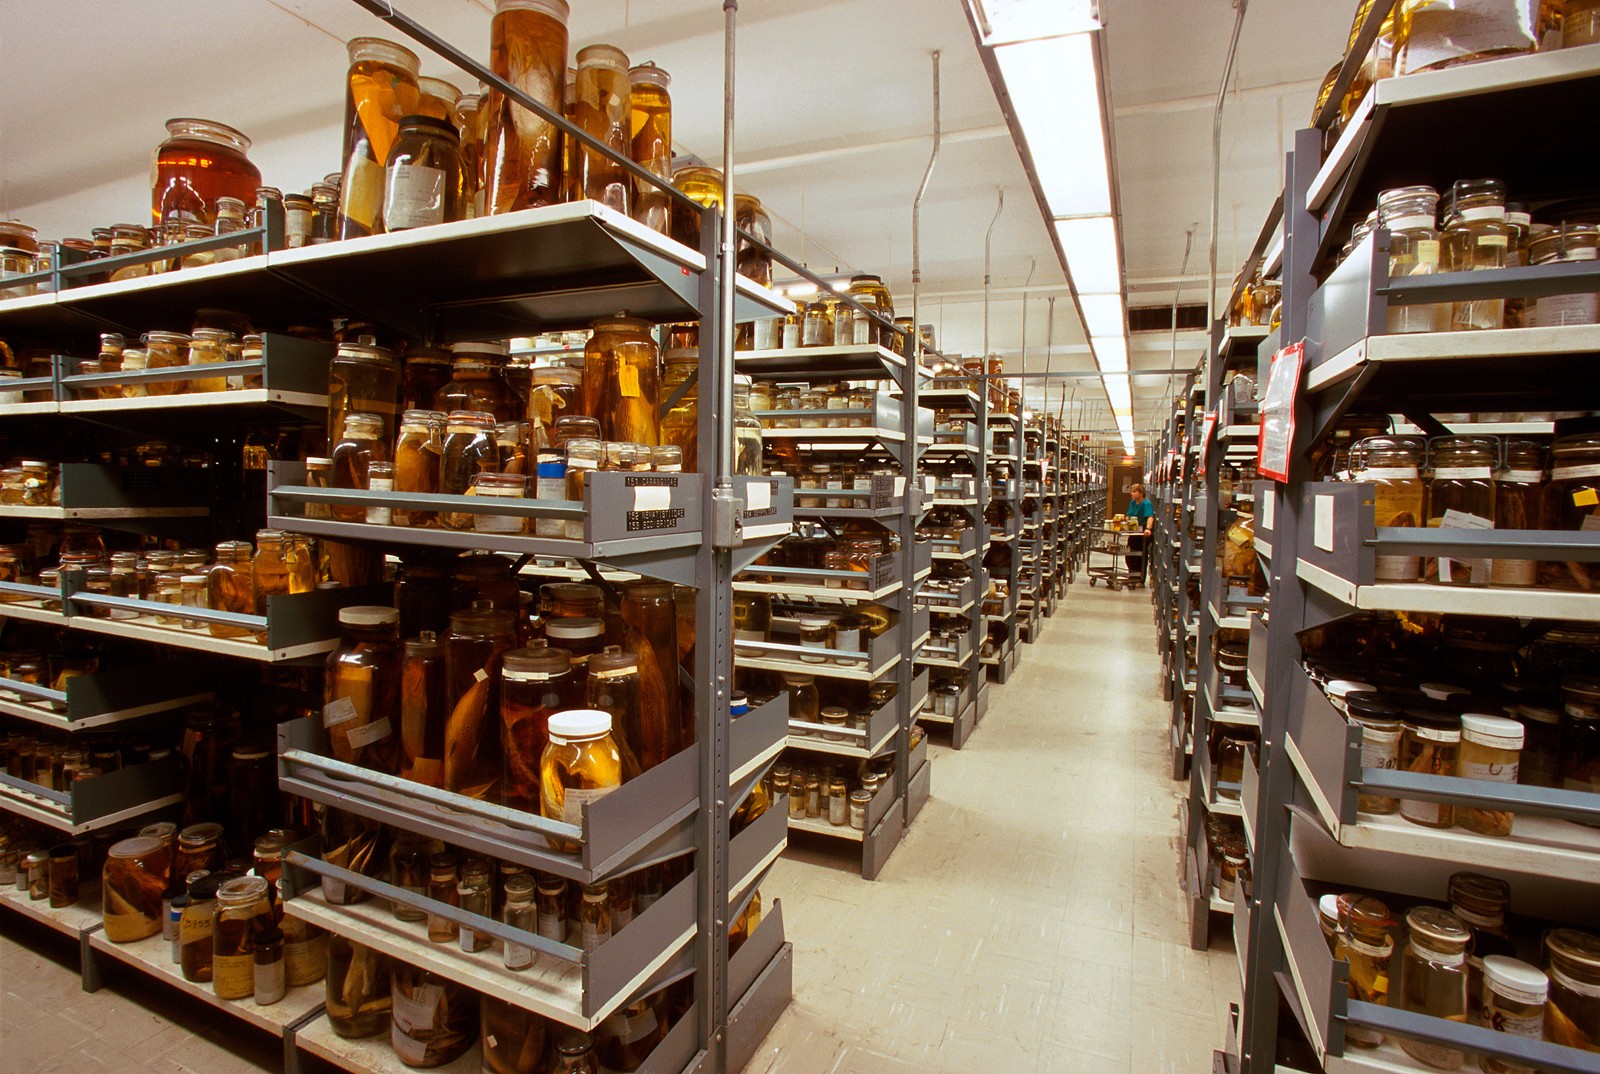 Setor de Piscicultura do museu, responsável pelo armazenamento de peixes (Foto: Divulgação/Smithsonian Institute)